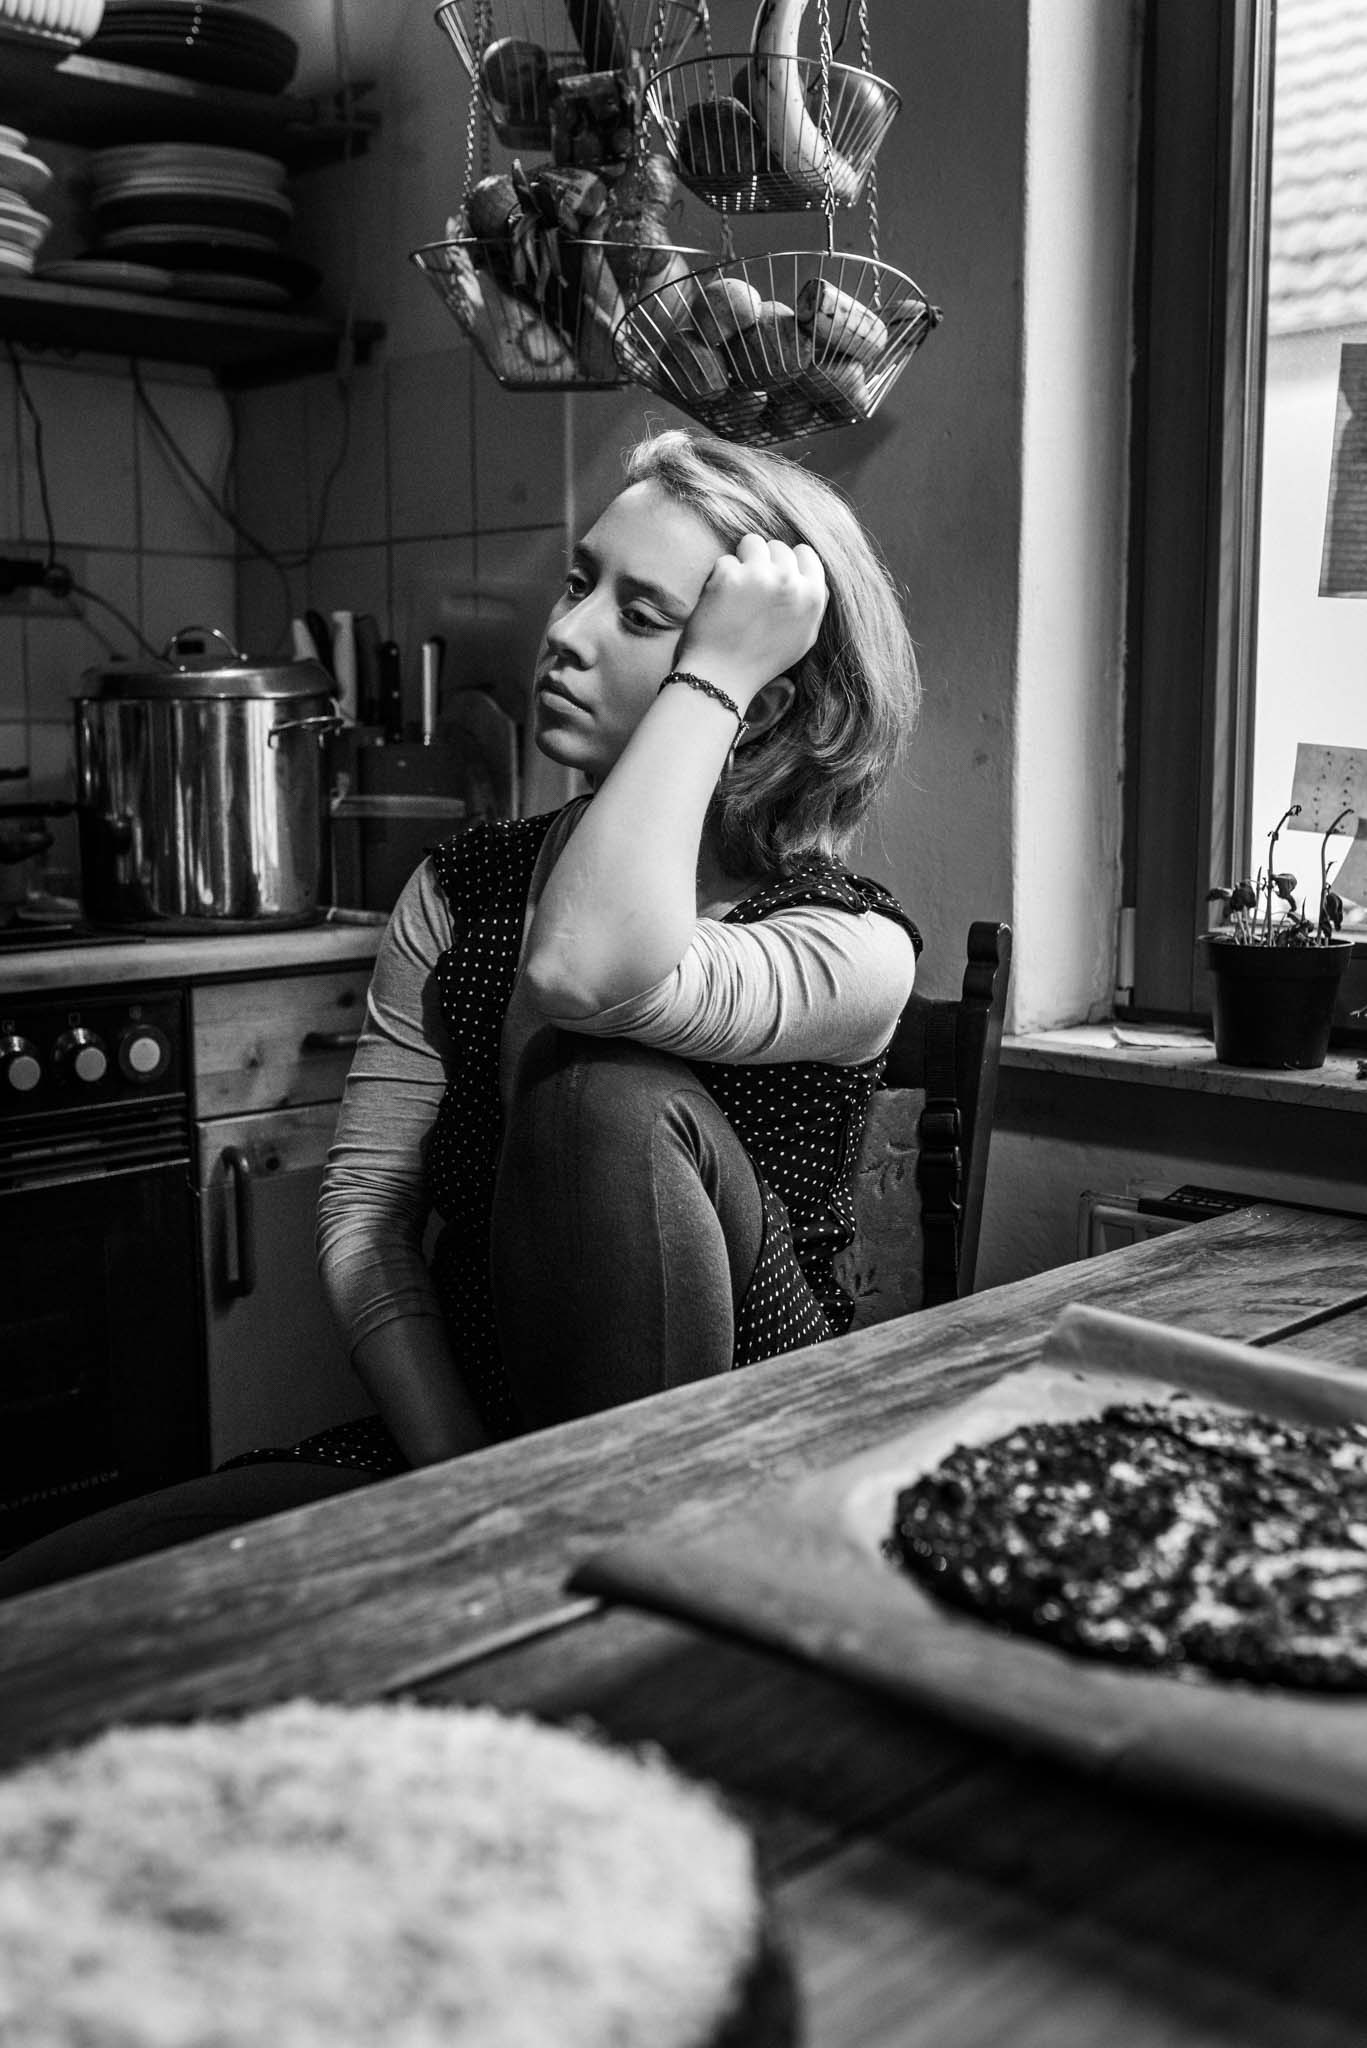 Foto einer jungen Frau in ihrer Küche. Sie sitzt auf einem Stuhl, ein Bein angezogen, den Kopf mit dem Arm auf das Knie gestützt. Ihr Blick ist gedankenversunken. Vor ihr stehen zwei frisch gebackene Kuchen.